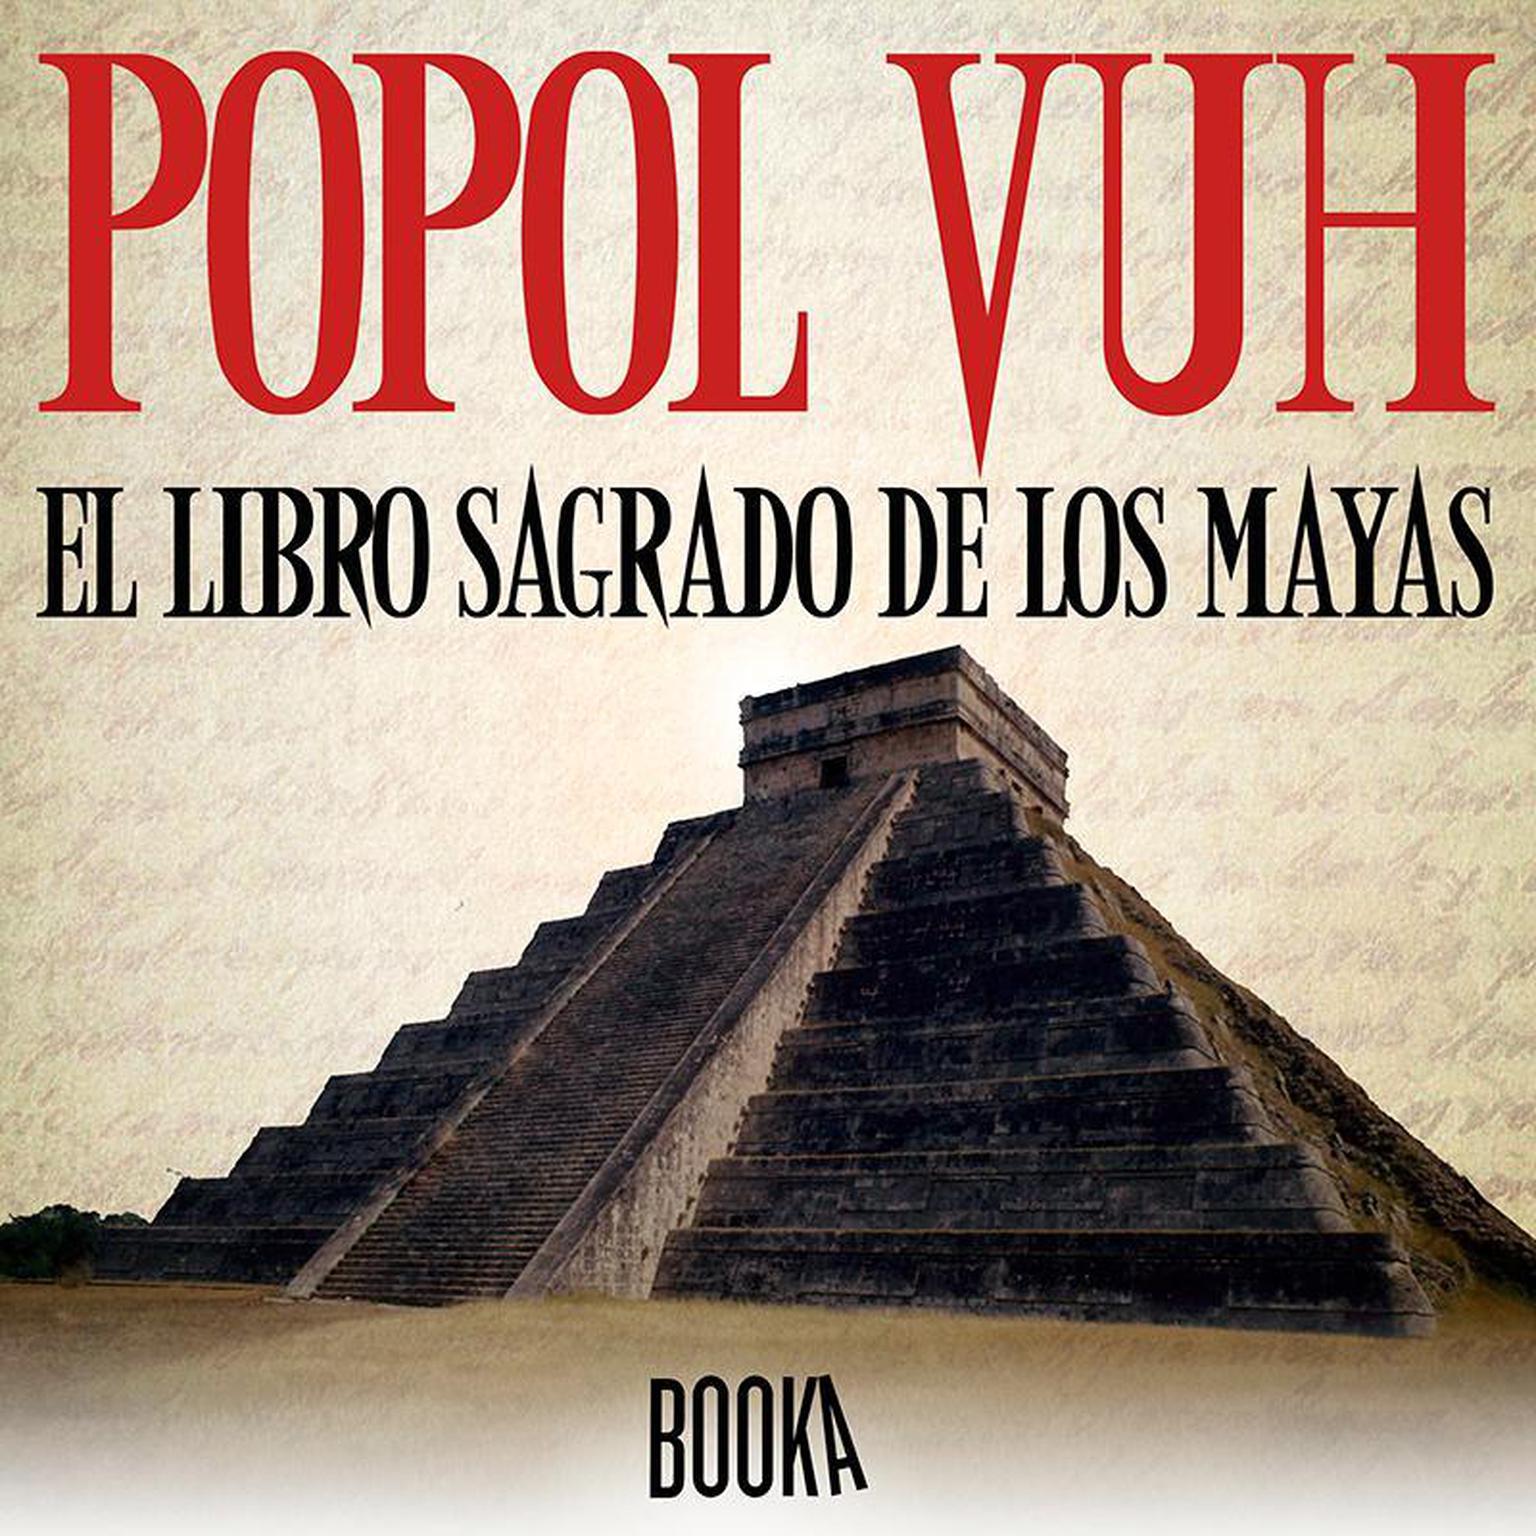 Popol Vuh: El Libro Sagrado de los Mayas Audiobook, by Maria Lopez Mulet